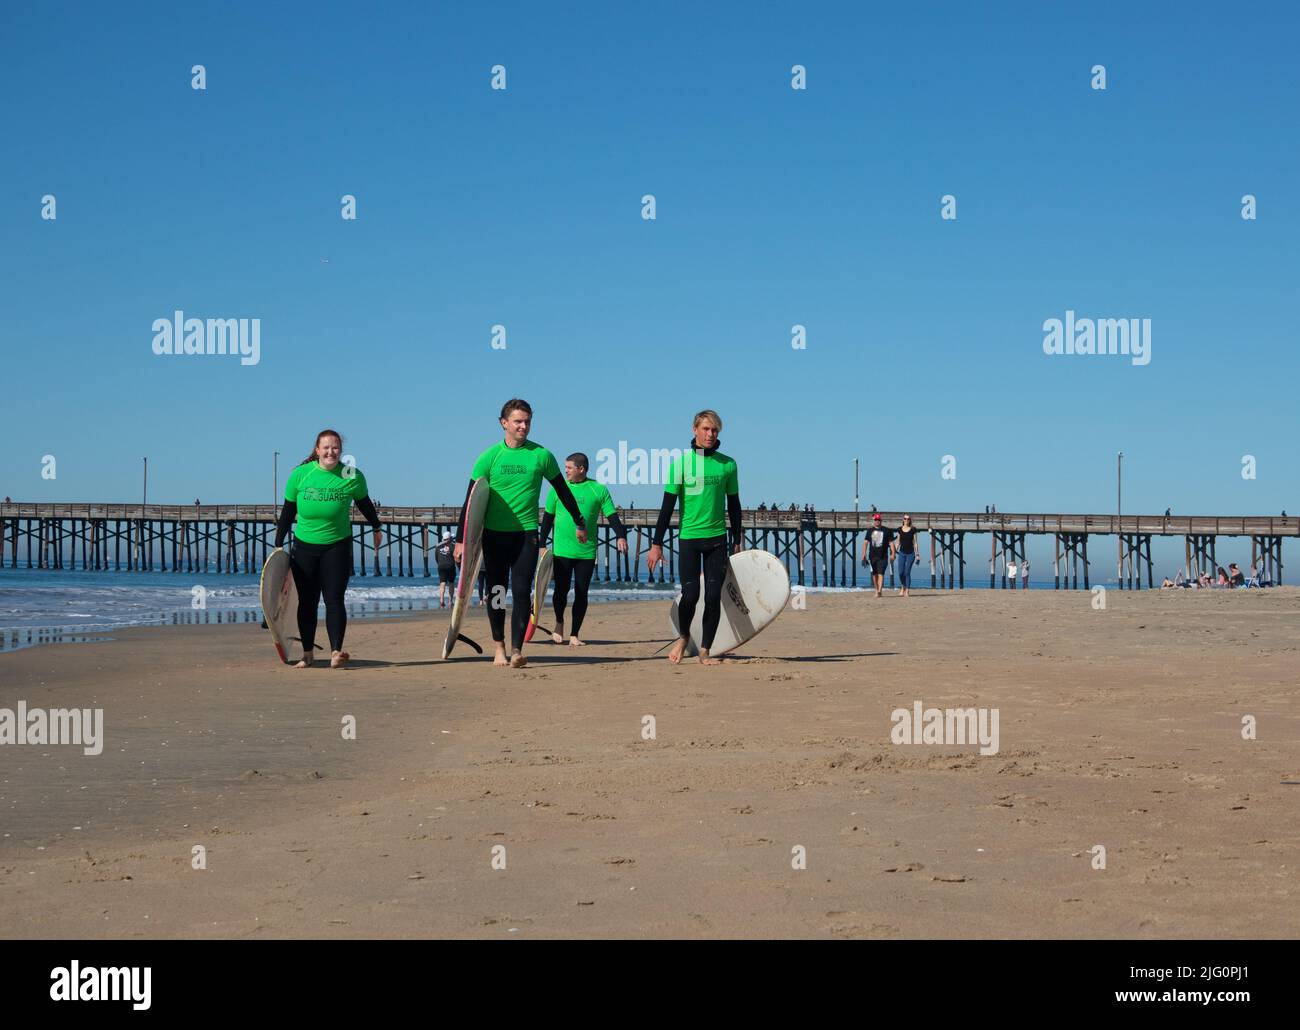 Vier junge Rettungsschwimmer mit grünen Tops und Surfbrettern laufen stolz am Strand von Newport Beach, Kalifornien, USA entlang Stockfoto